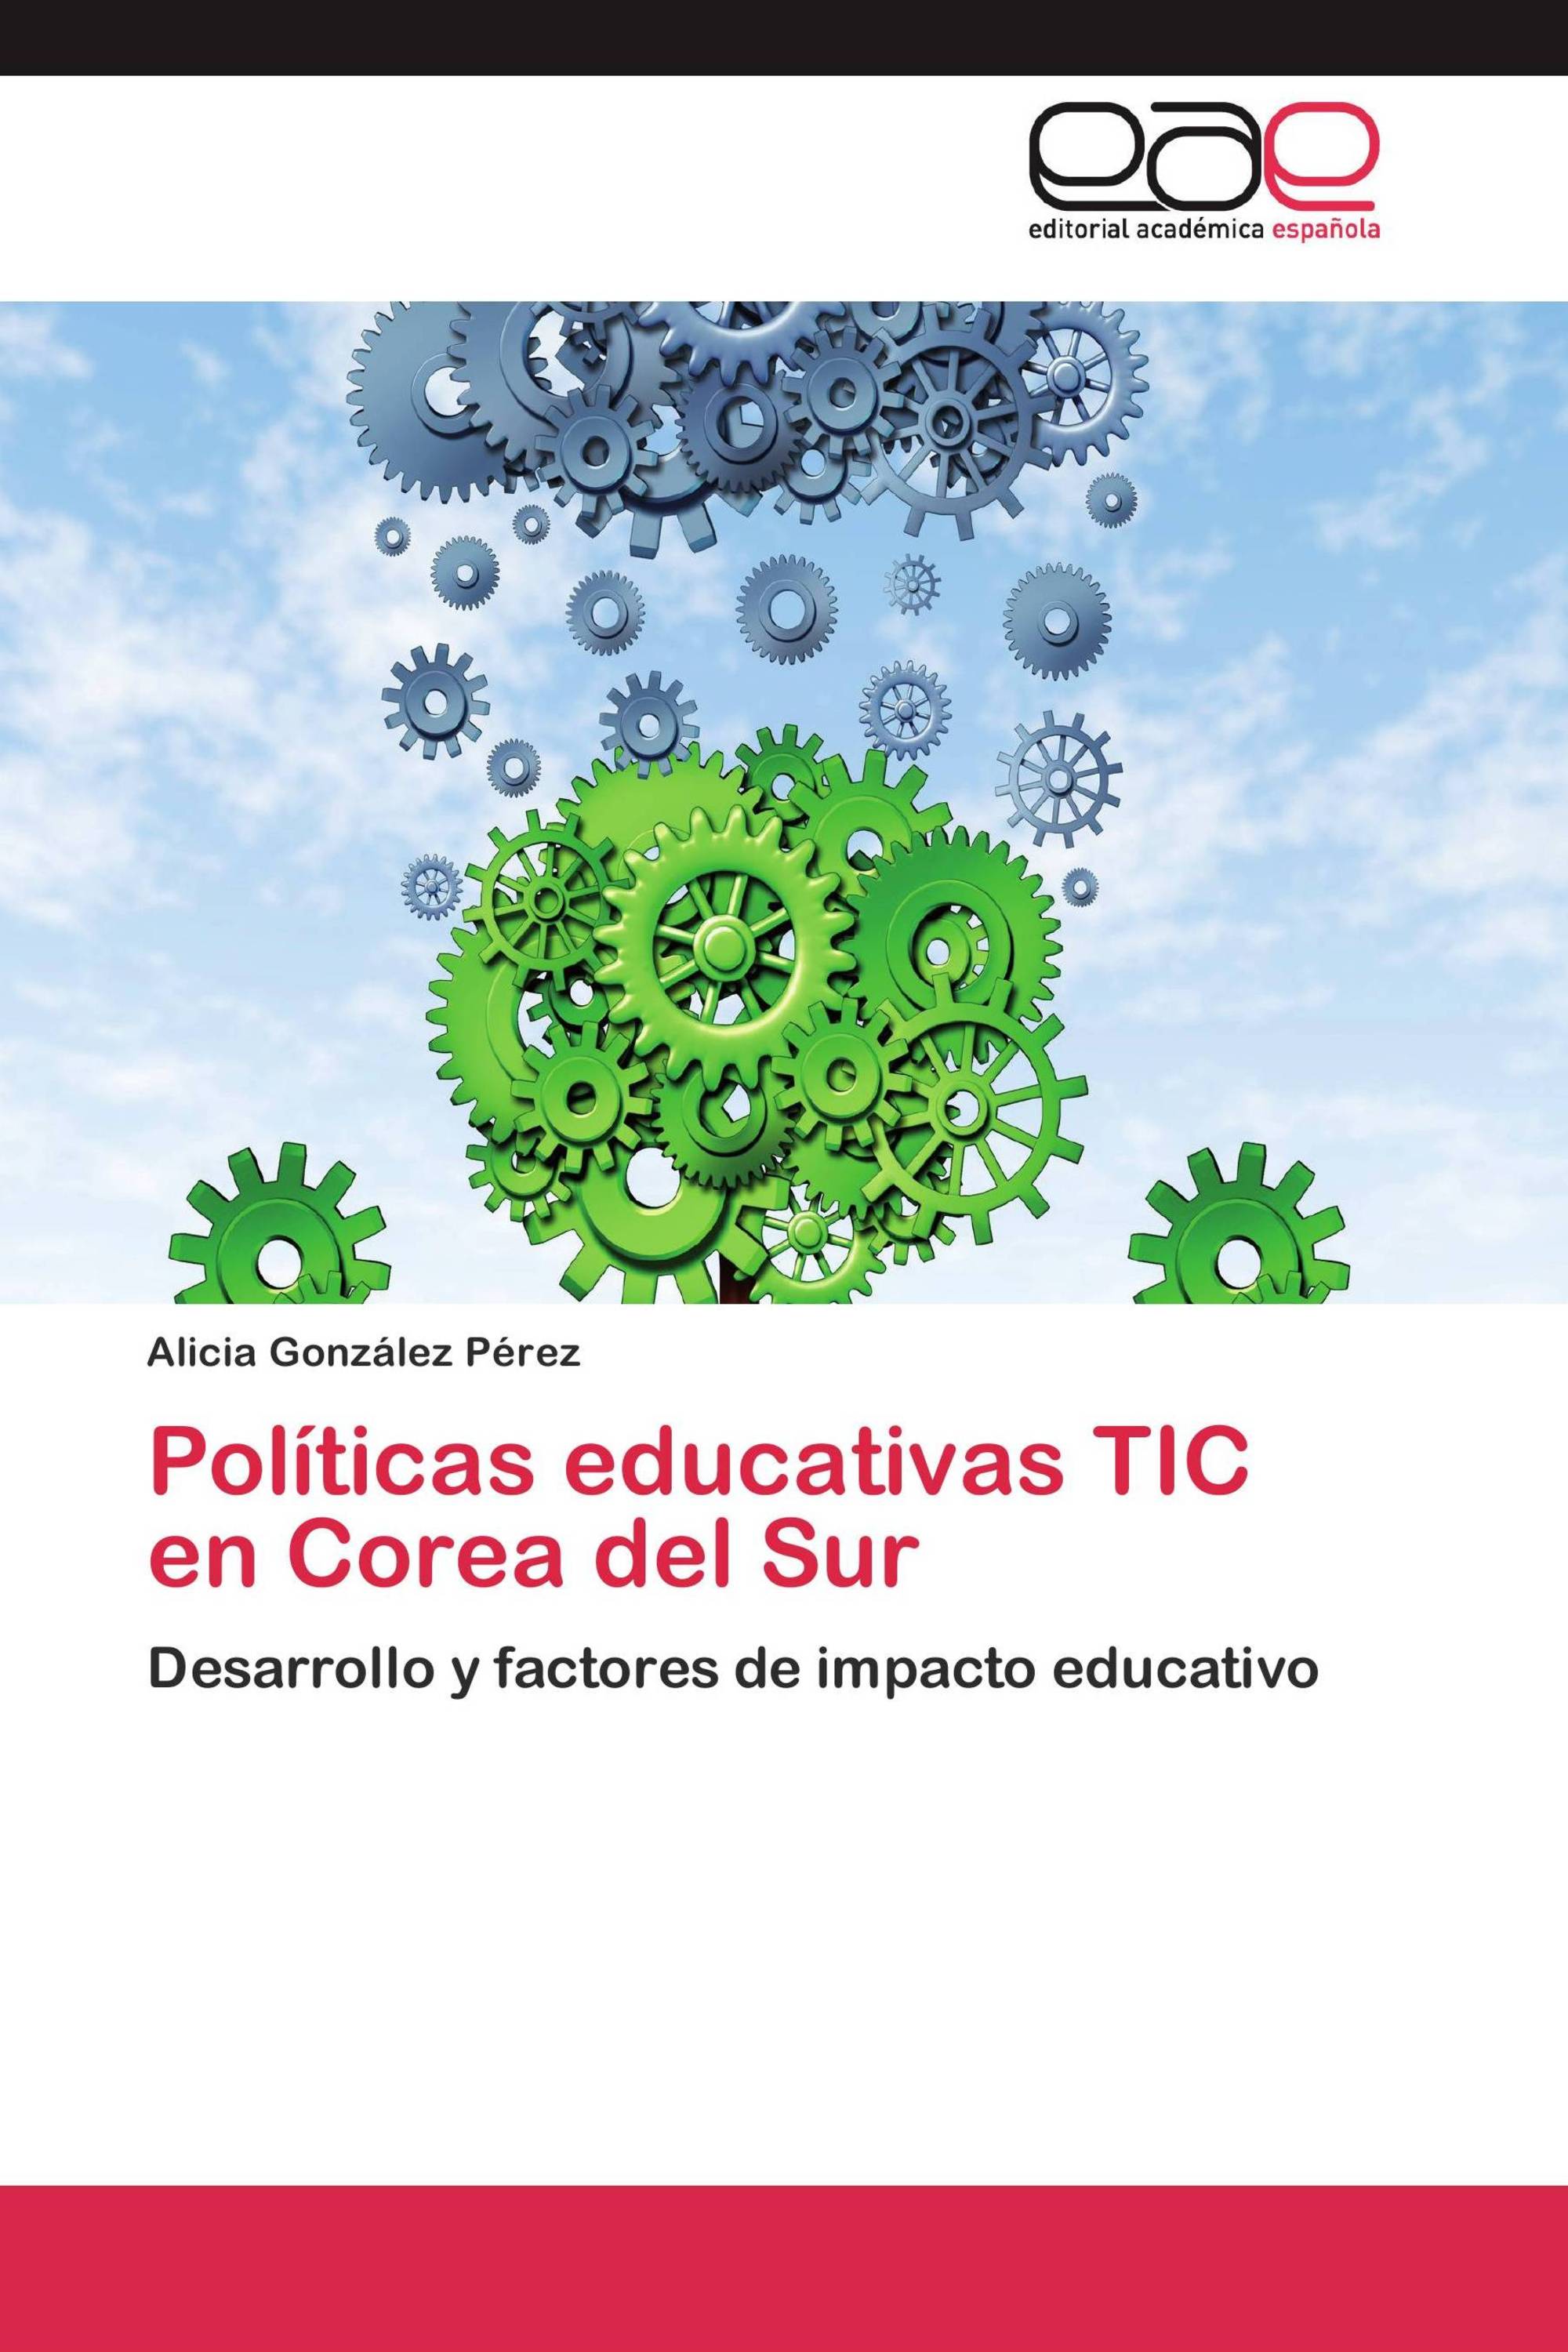 Imagen de portada del libro Políticas educativas TIC en Corea del Sur. Desarrollo y factores de impacto educativo